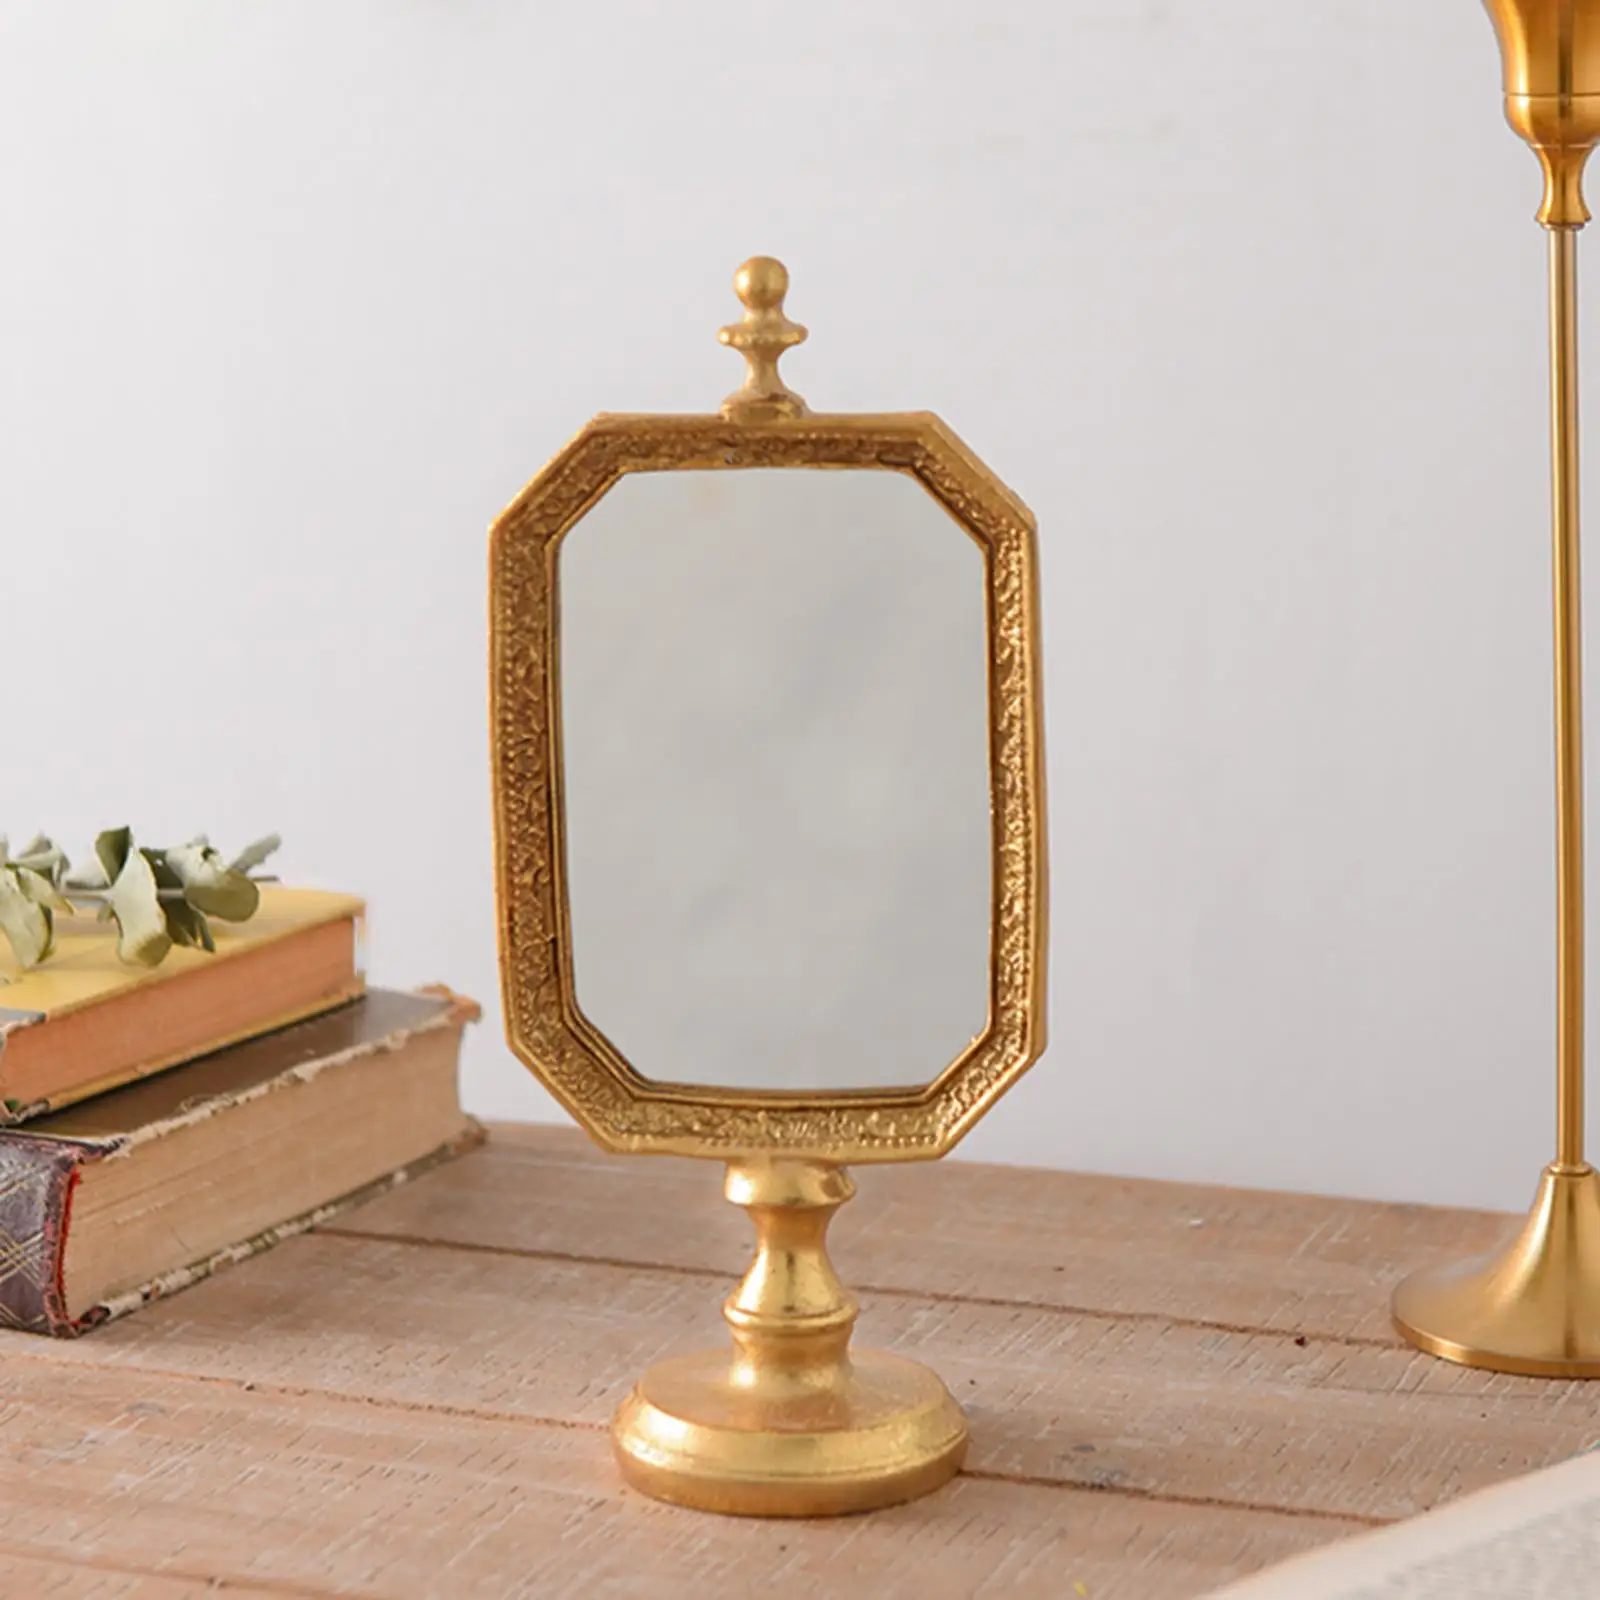 

Косметическое зеркало в винтажном стиле, декоративное настольное косметическое зеркало в античном стиле, настольное косметическое зеркал...